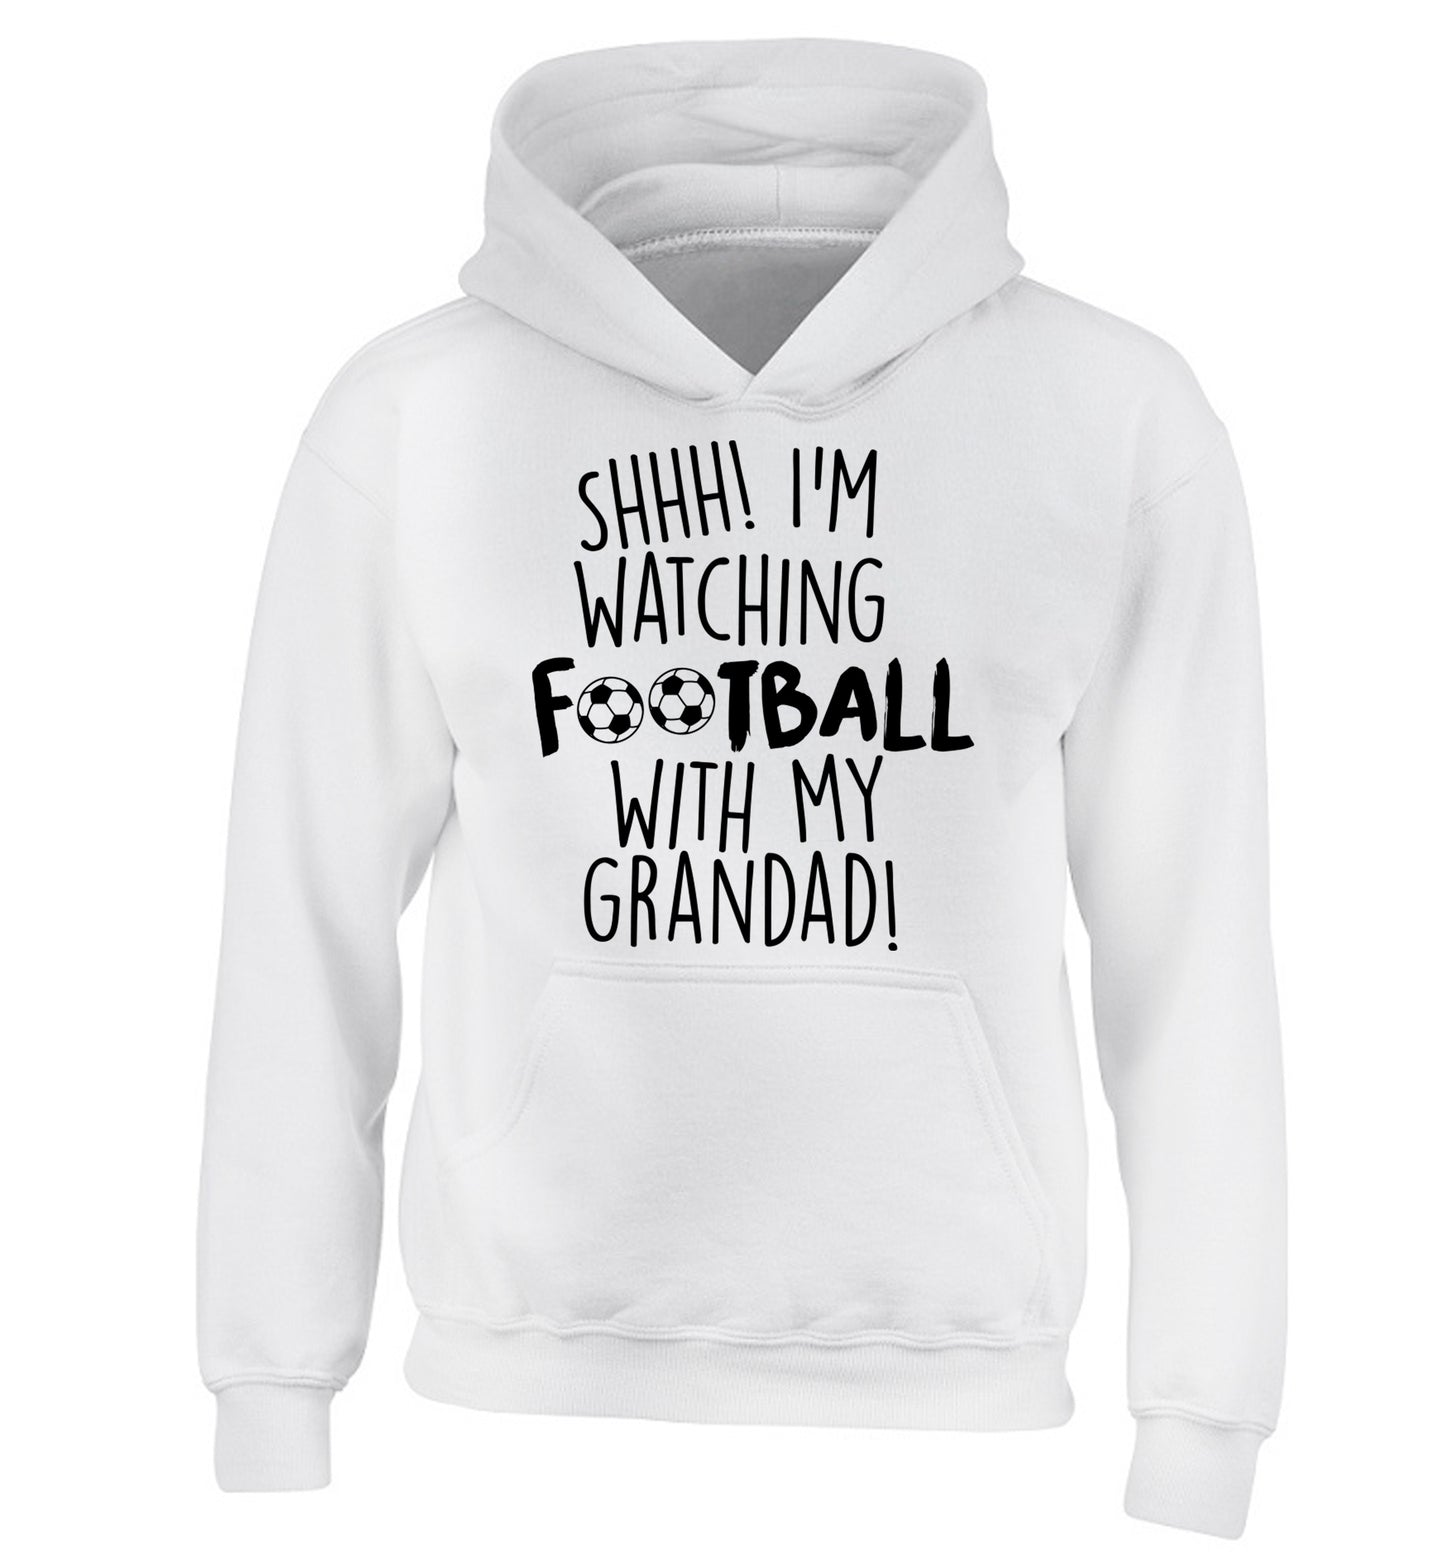 Shhh I'm watching football with my grandad children's white hoodie 12-14 Years